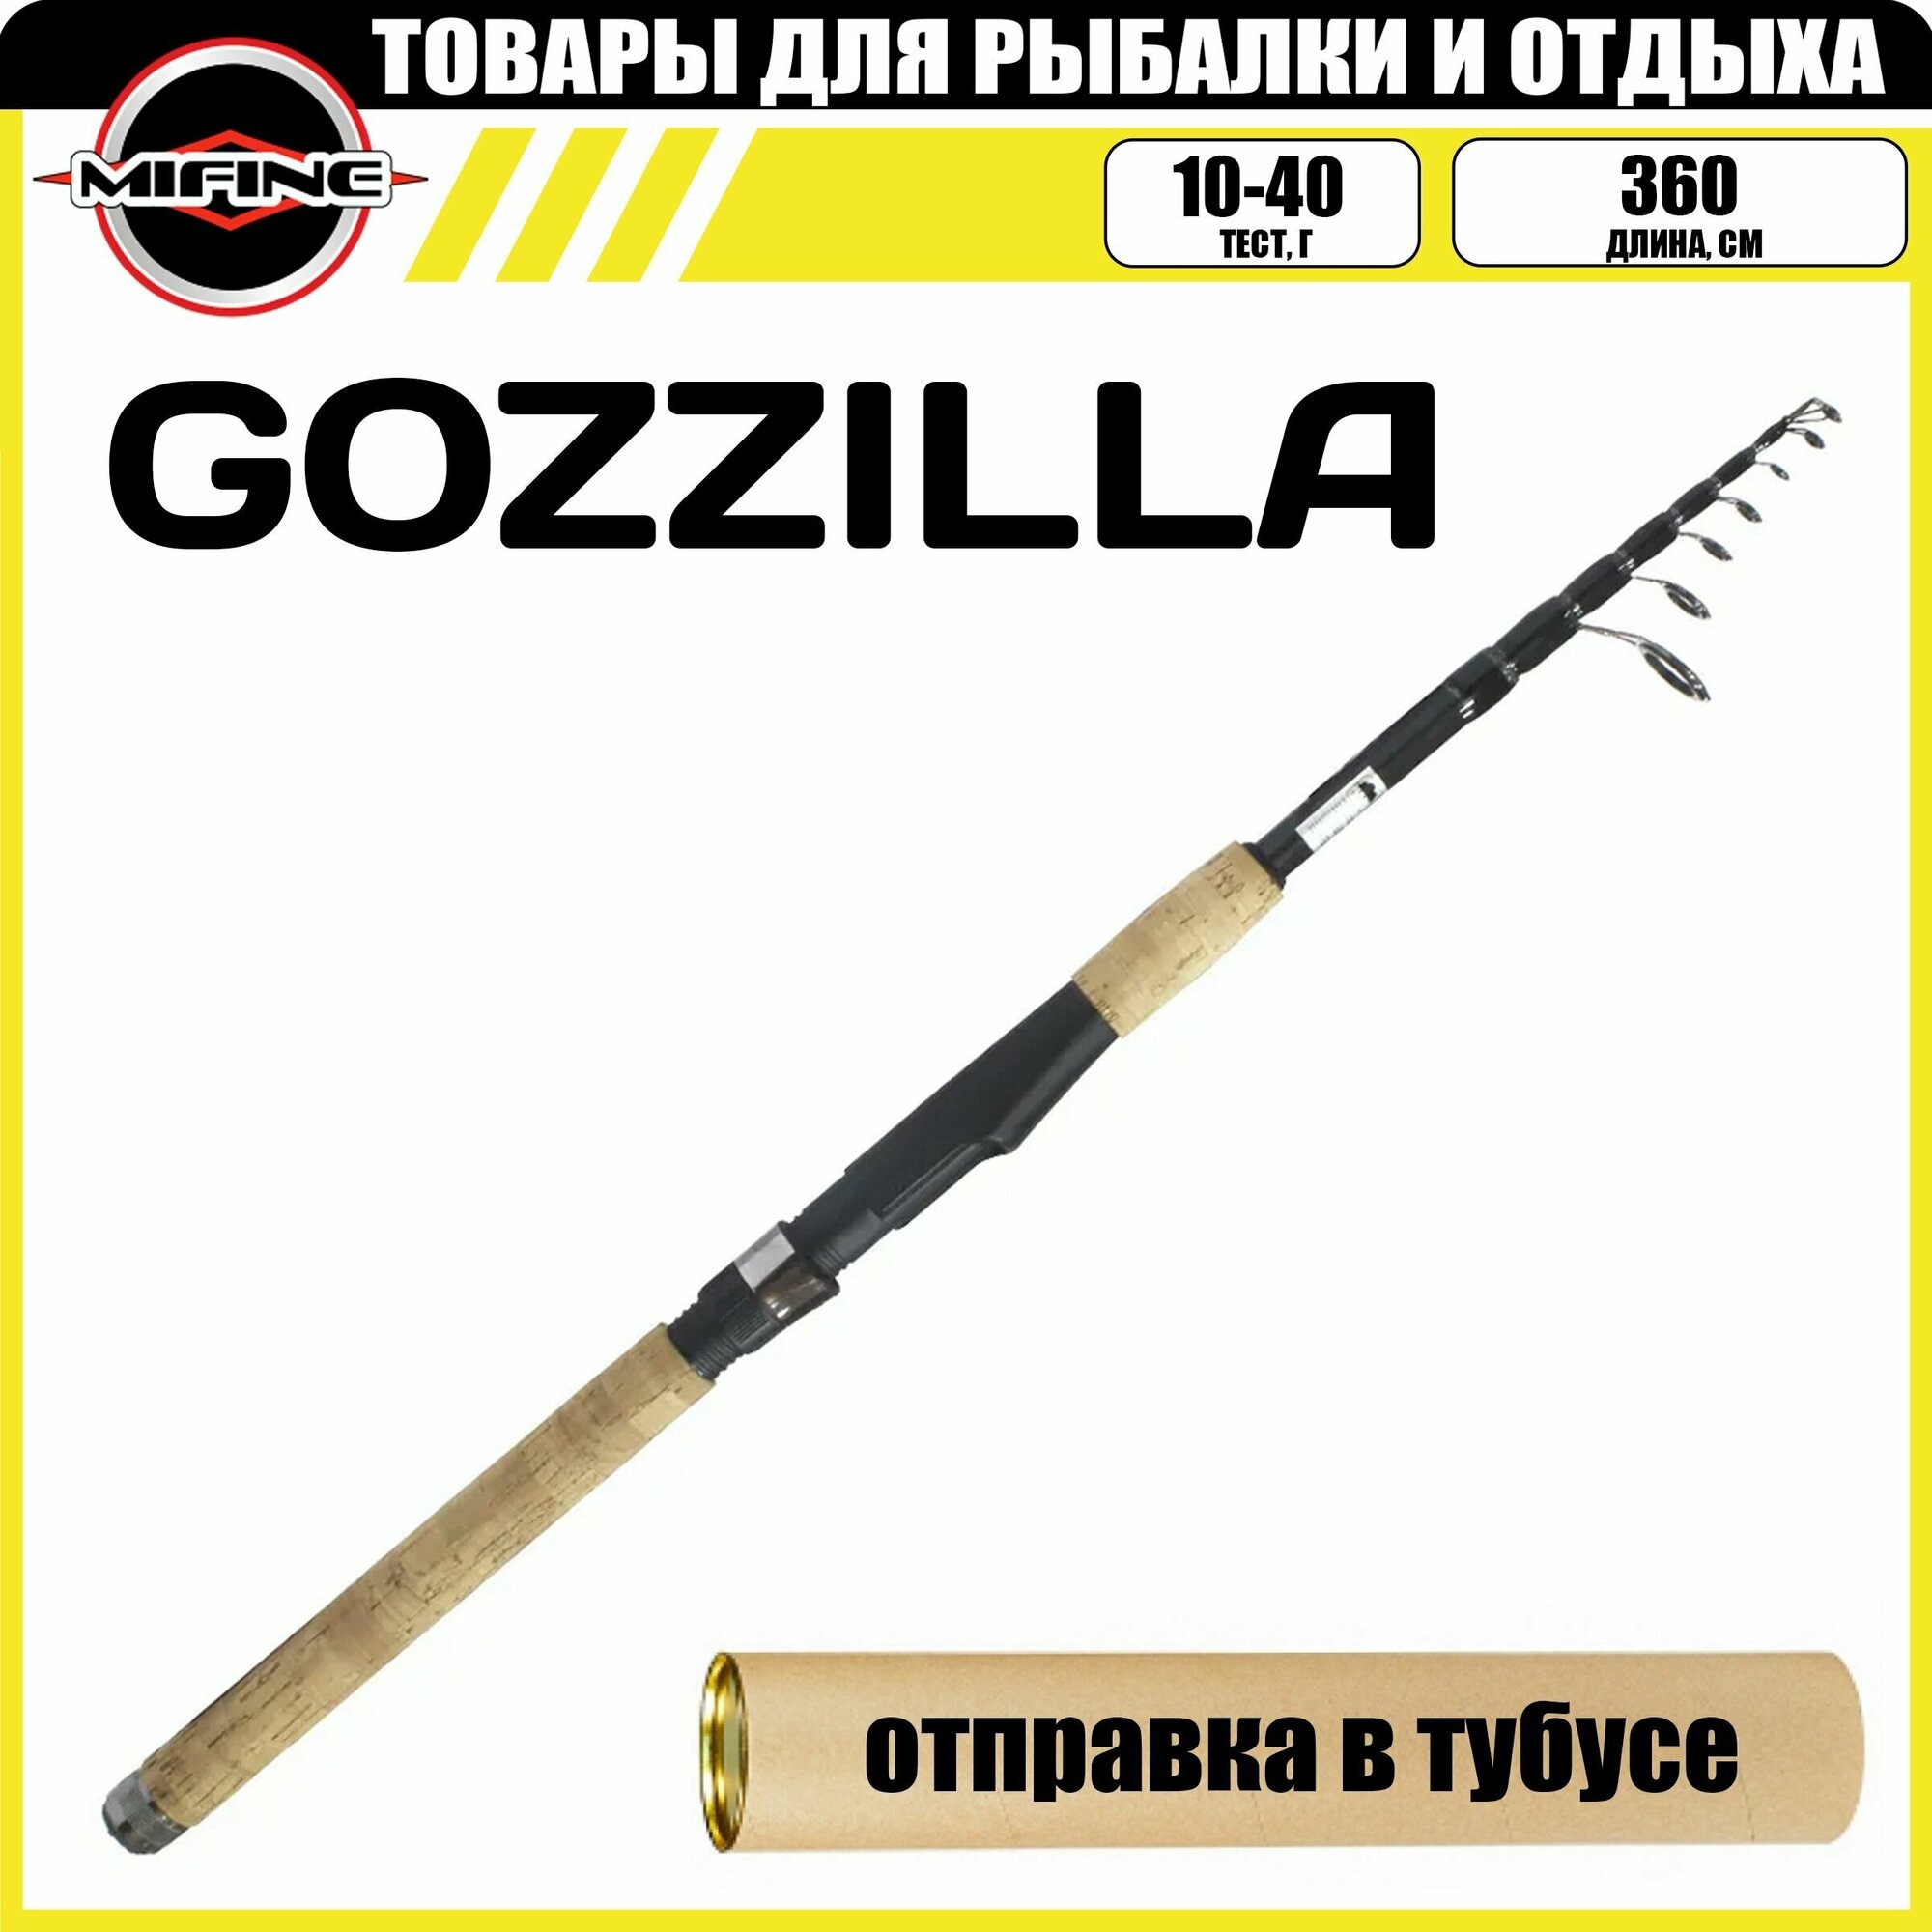 Спиннинг телескопический MIFINE GOZZILLA TELESPIN 3.6м (10-40гр), рыболовный, удилище для рыбалки, карбон